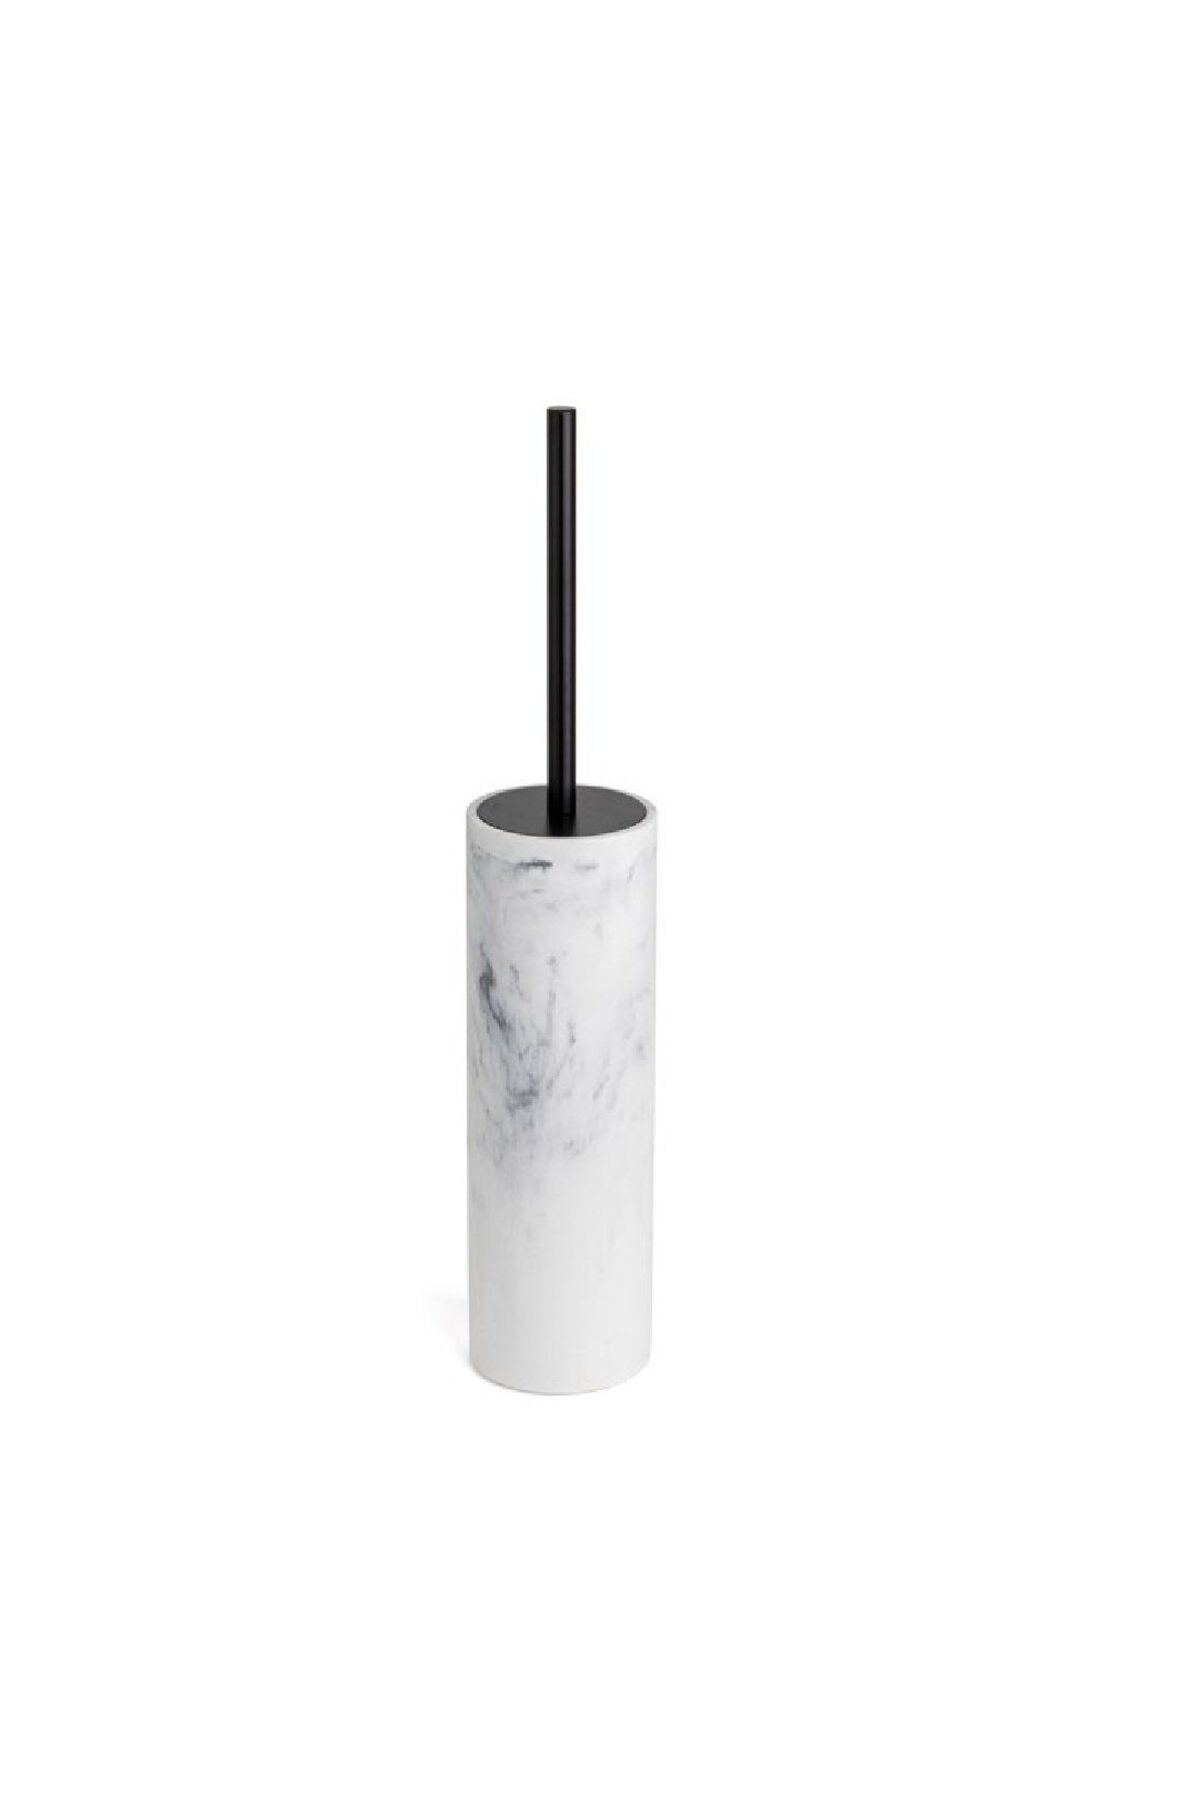 Tuvalet Fırçası Mermer Desenli/Siyah Renk 420X80X80 mm